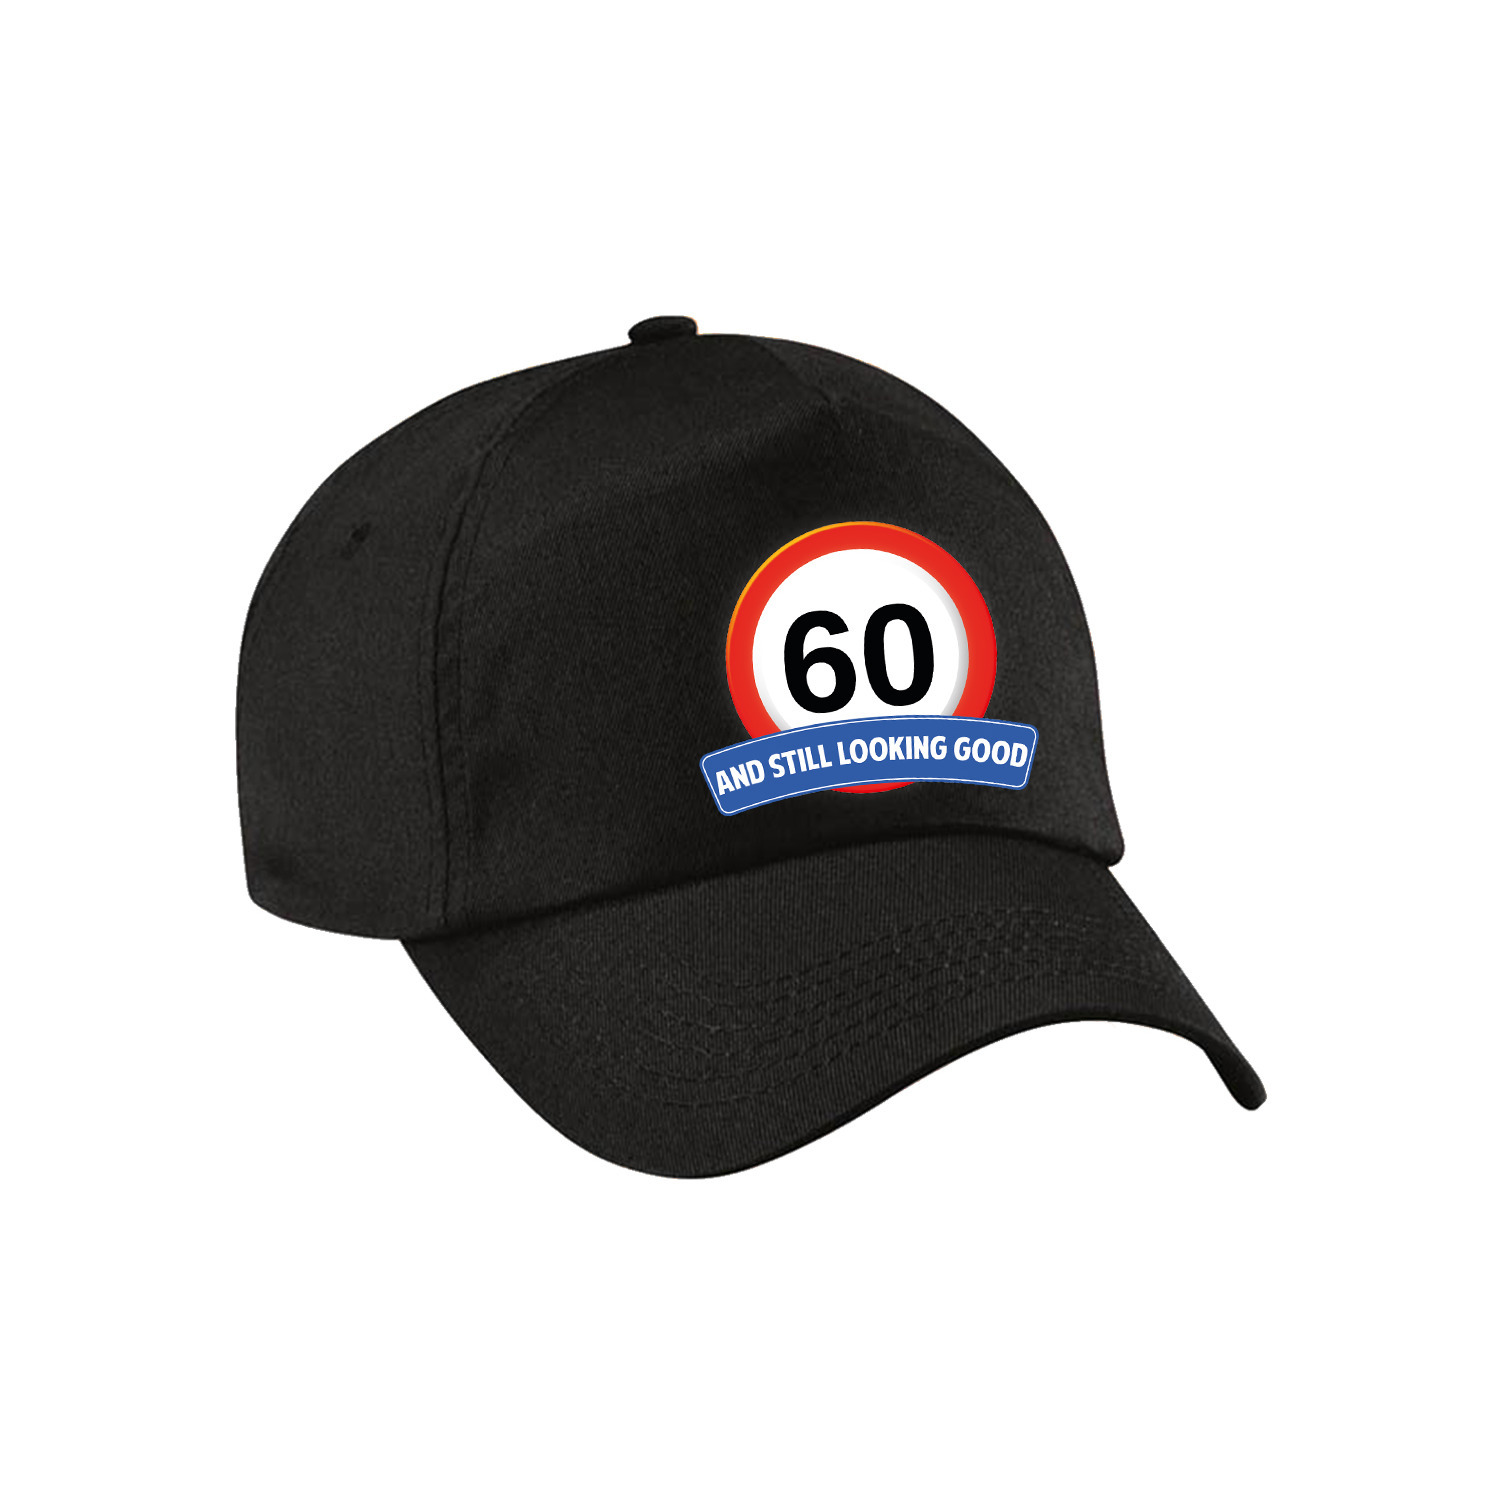 60 and still looking good stopbord pet-cap zwart voor volwassenen